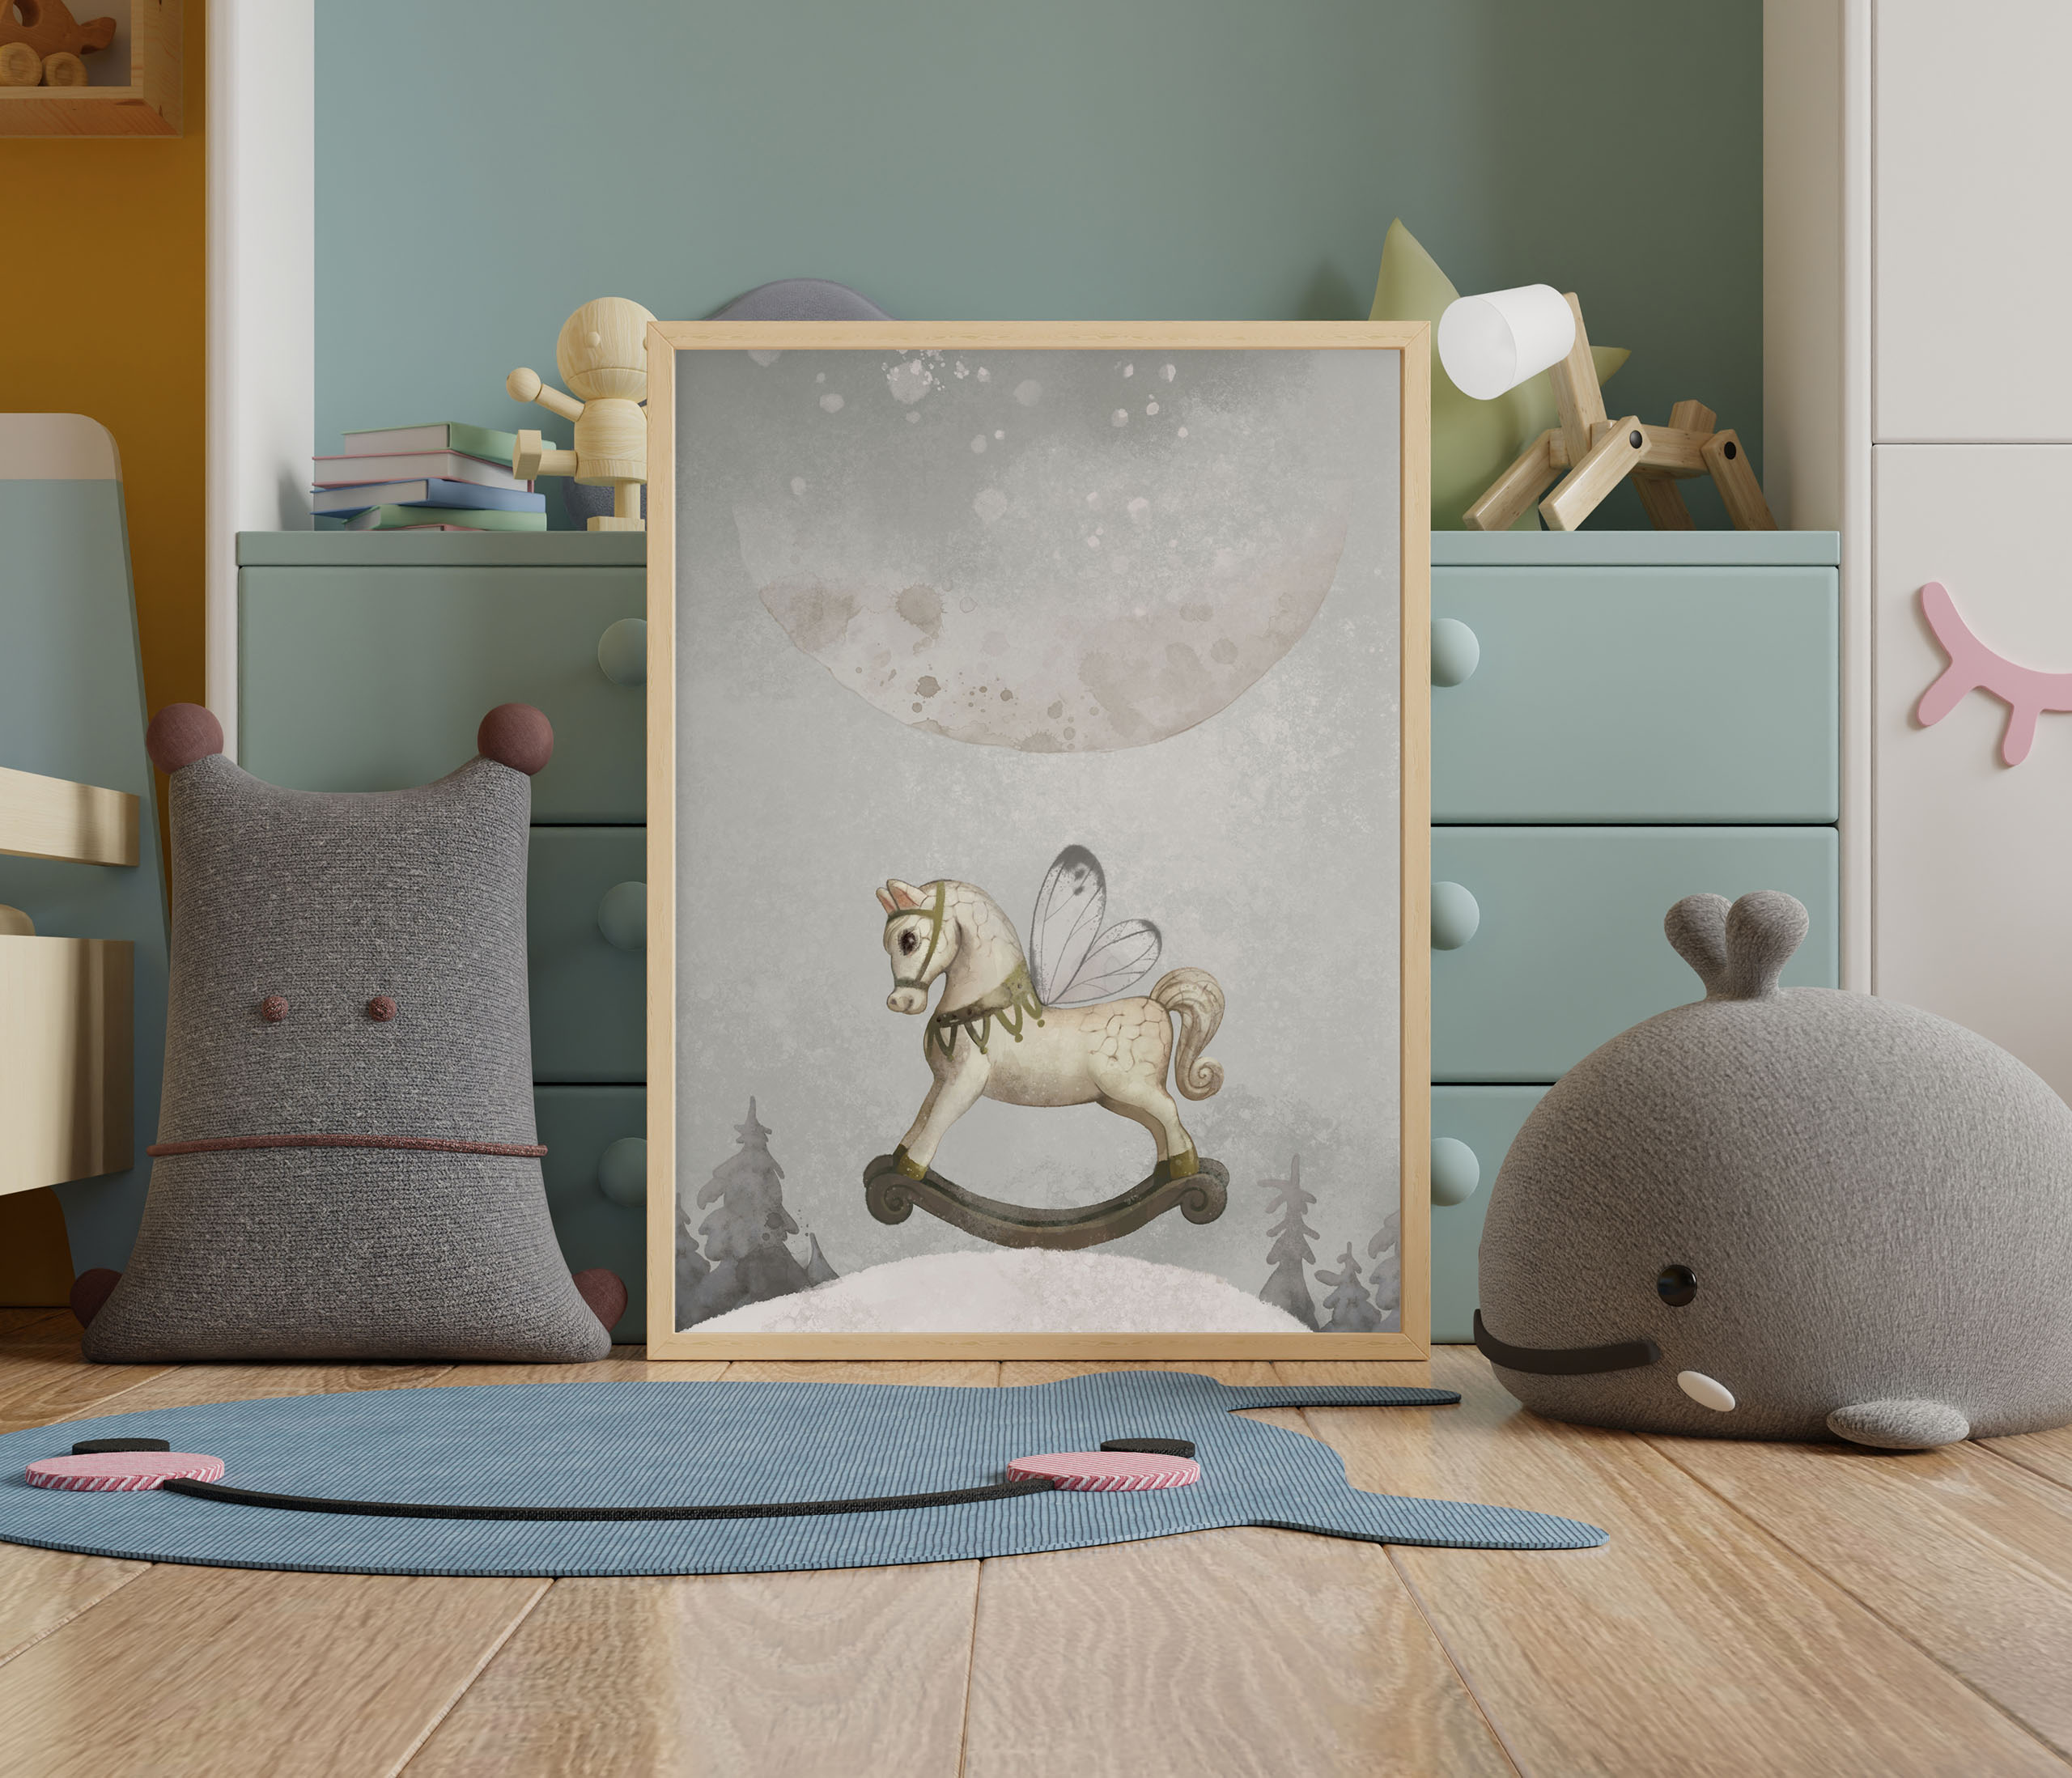 Plakat przedstawiający konia na biegunach w zimowej atmosferze z księżycem. Plakat do pokoju dziecięcego.